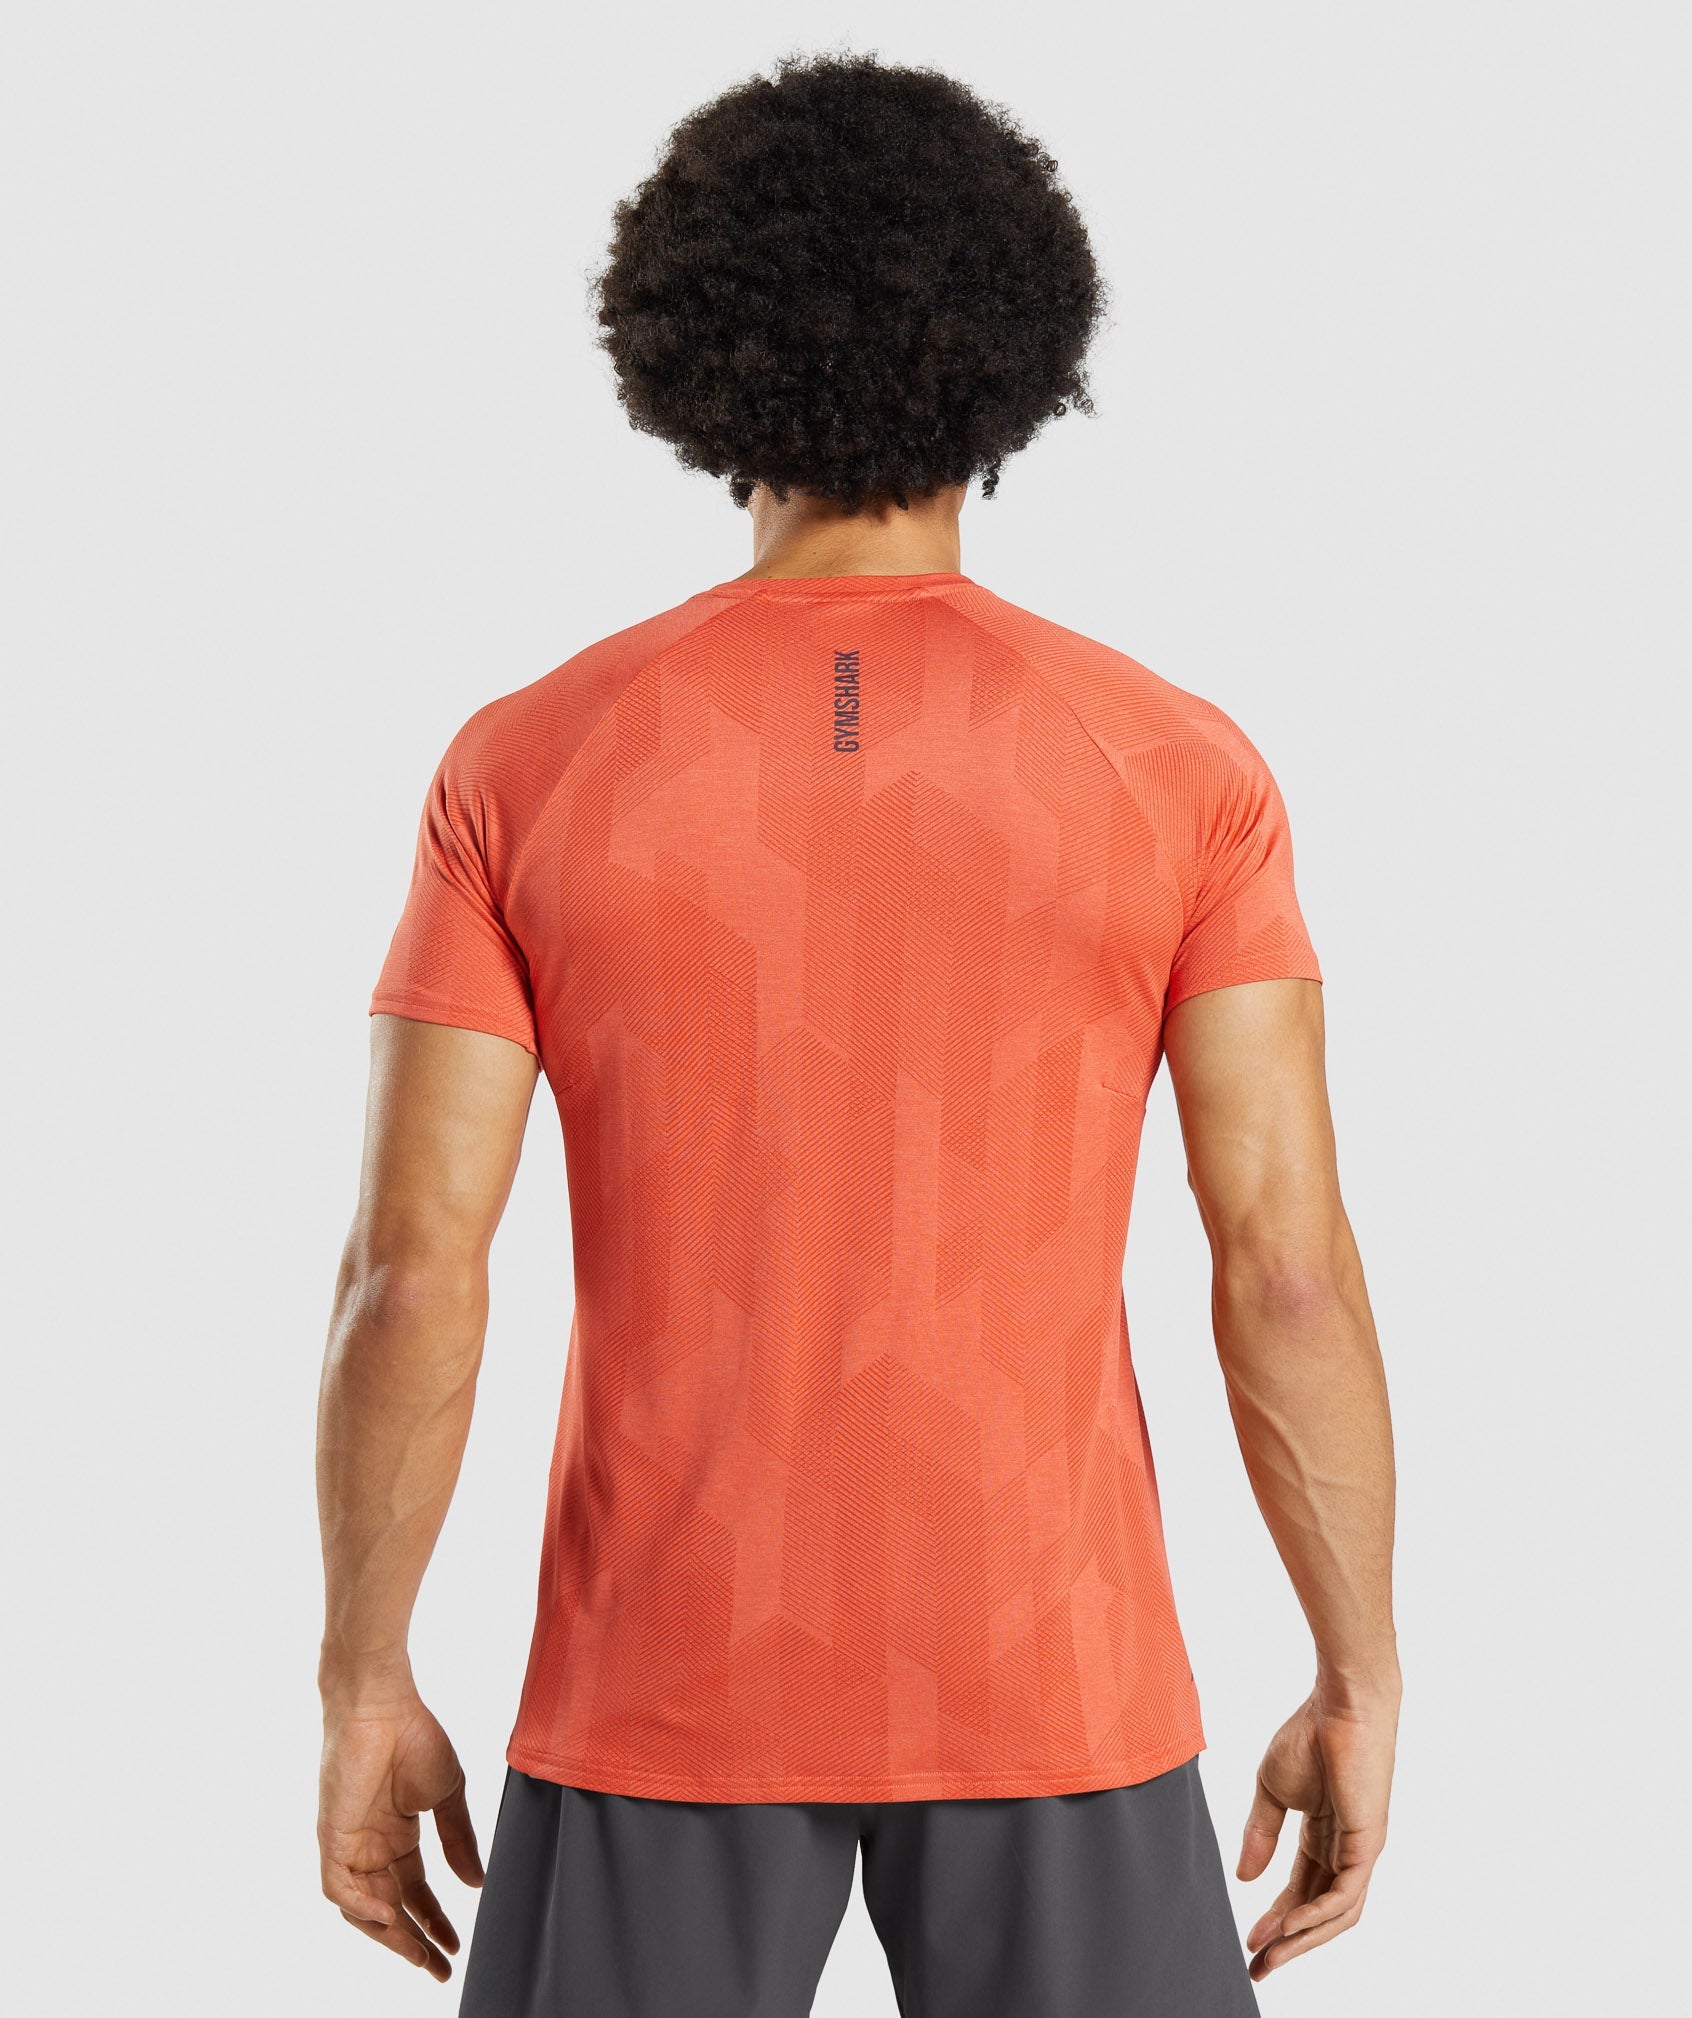 Apex T-Shirt in Spicy Orange/Papaya Orange